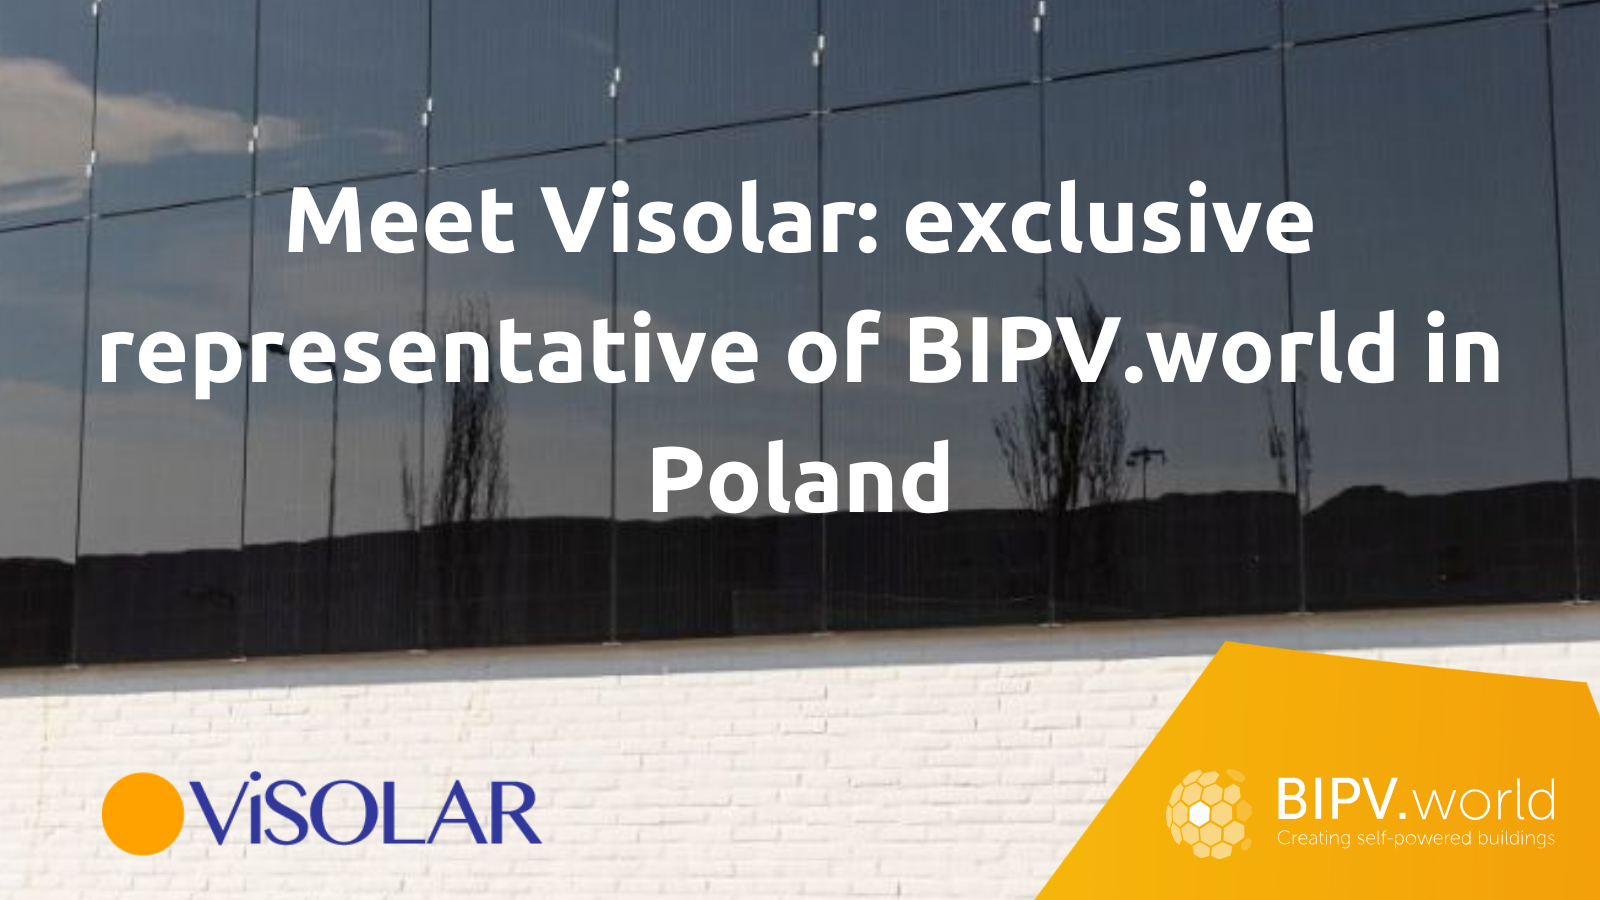 Maak kennis met Visolar: vertegenwoordiger van BIPV.world in Polen